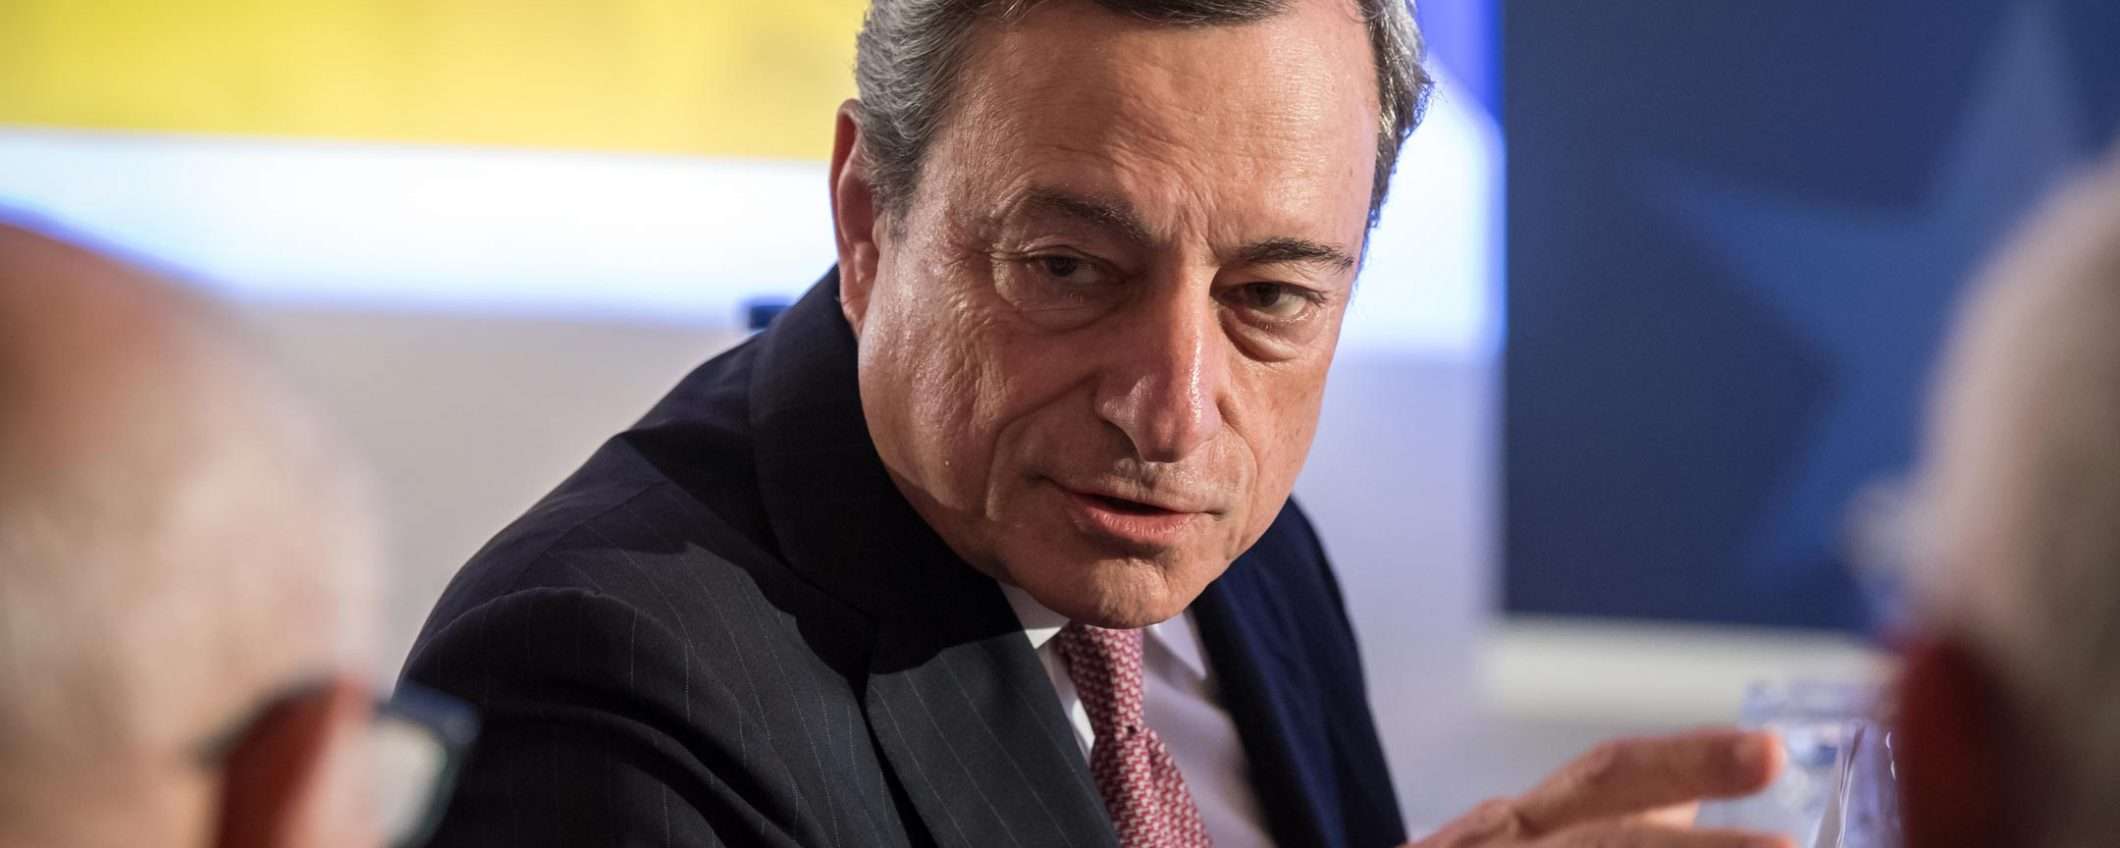 Draghi: la DaD va bocciata perché genera disparità